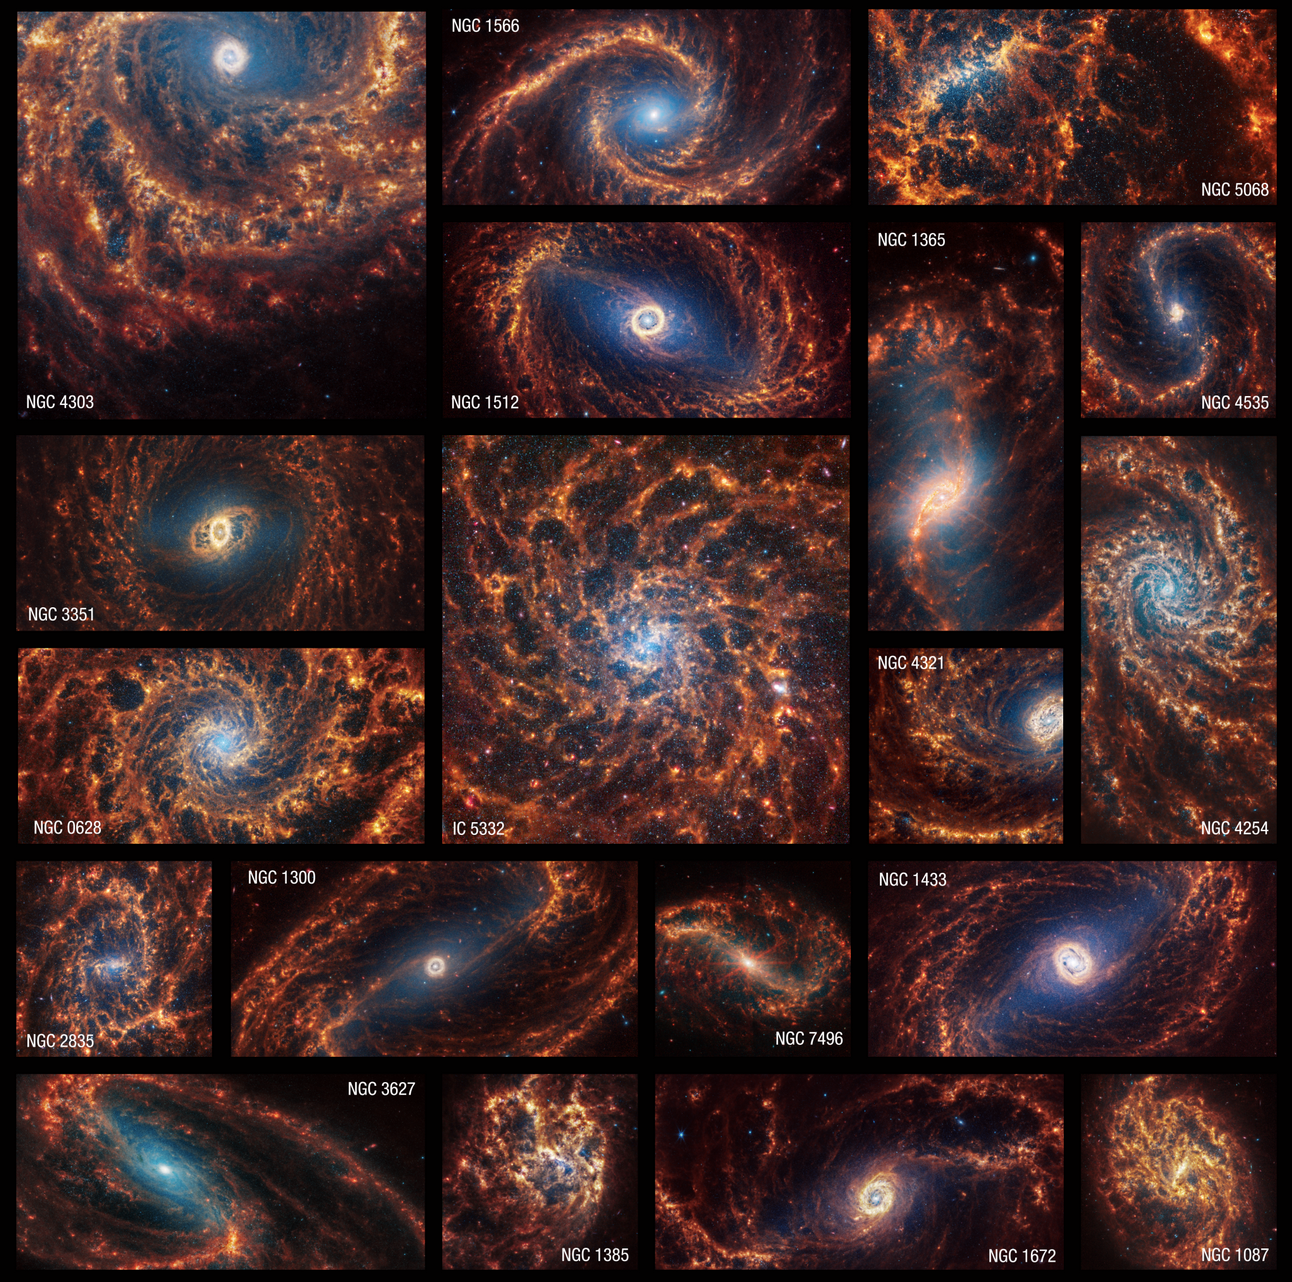 Diecinueve imágenes de Webb con vistas frontales de galaxias espirales se combinan en un mosaico. Algunas aparecen dentro de cuadrados y otras en rectángulos horizontales o verticales. Muchas galaxias tienen neblinas azules hacia su centro y todas tienen brazos en espiral de color naranja. Muchas tienen estructuras claras en forma de barras en su centro, pero algunas tienen espirales que comienzan en sus núcleos. Algunos de los brazos de las galaxias tienen formas claras de espiral, mientras que otras son más irregulares. Algunos de los brazos de las galaxias parecen girar en el sentido de las agujas del reloj y otros van en el sentido contrario. La mayoría de los núcleos de las galaxias están centrados, pero algunos aparecen hacia el borde de las imágenes. La mayoría de las galaxias parecen extenderse más allá de las observaciones captadas. Las galaxias que se muestran, en orden alfabético, son IC 5332, NGC 628, NGC 1087, NGC 1300, NGC 1365, NGC 1385, NGC 1433, NGC 1512, NGC 1566, NGC 1672, NGC 2835, NGC 3351, NGC 3627, NGC 4254, NGC 4303, NGC 4321, NGC 4535, NGC 5068 y NGC 7496.